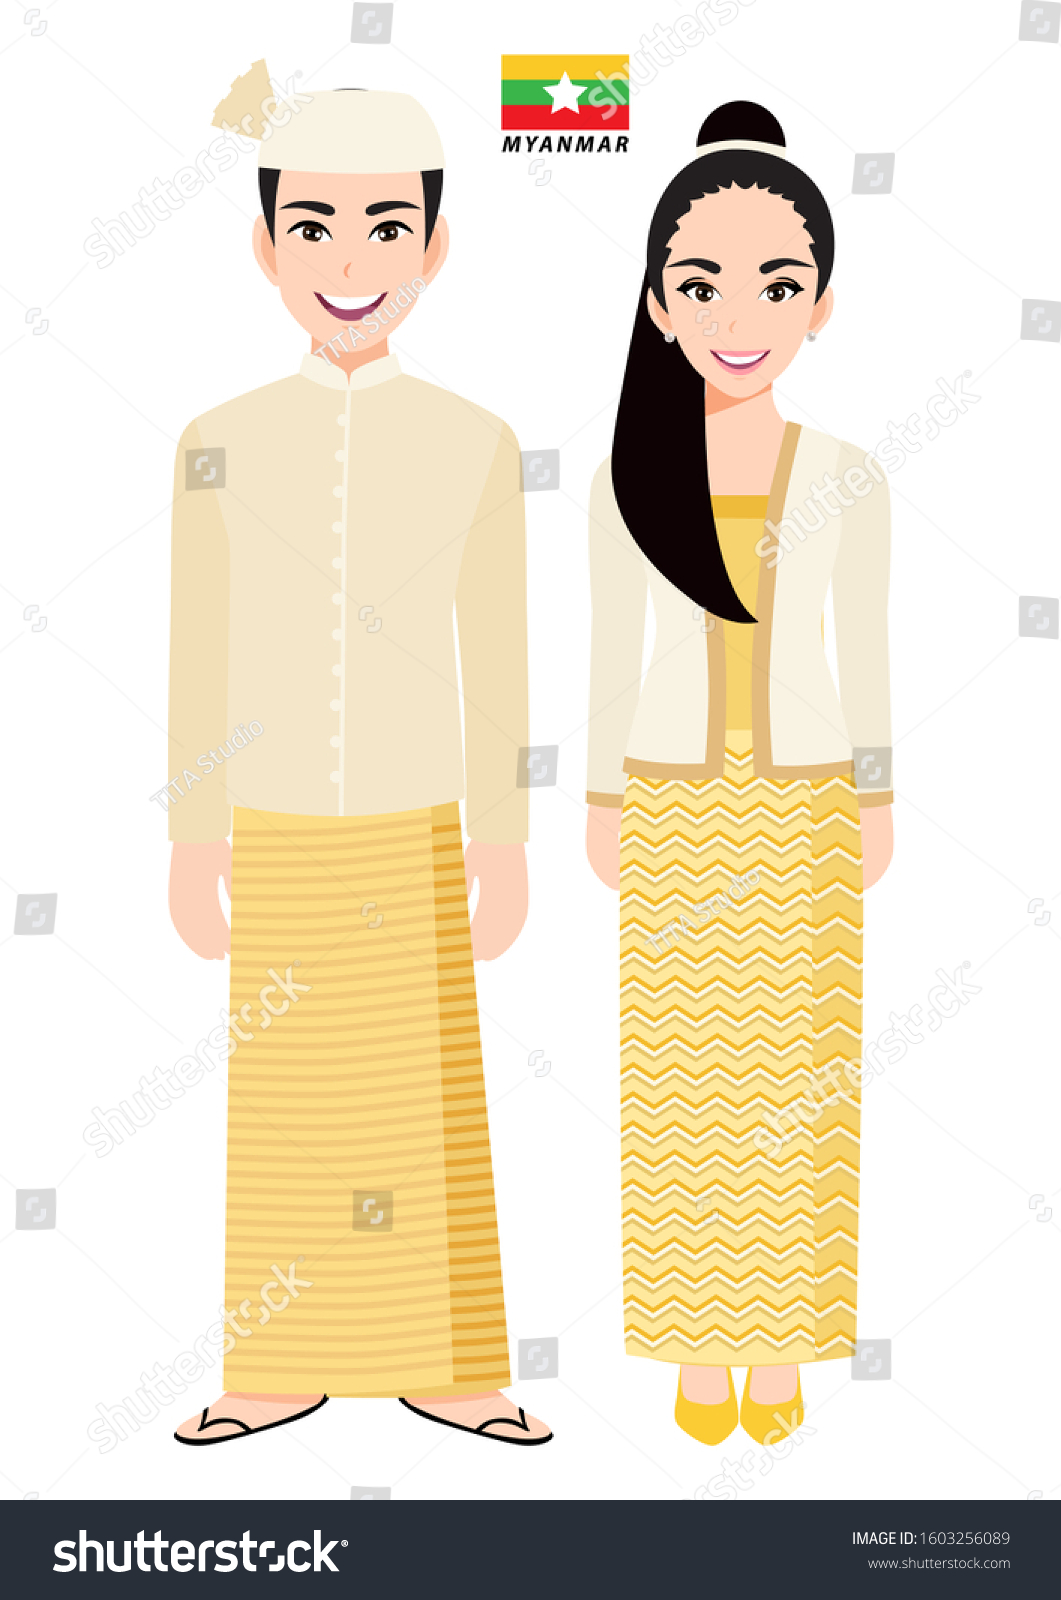 1,367 Myanmar couple vector Images, Stock Photos & Vectors | Shutterstock